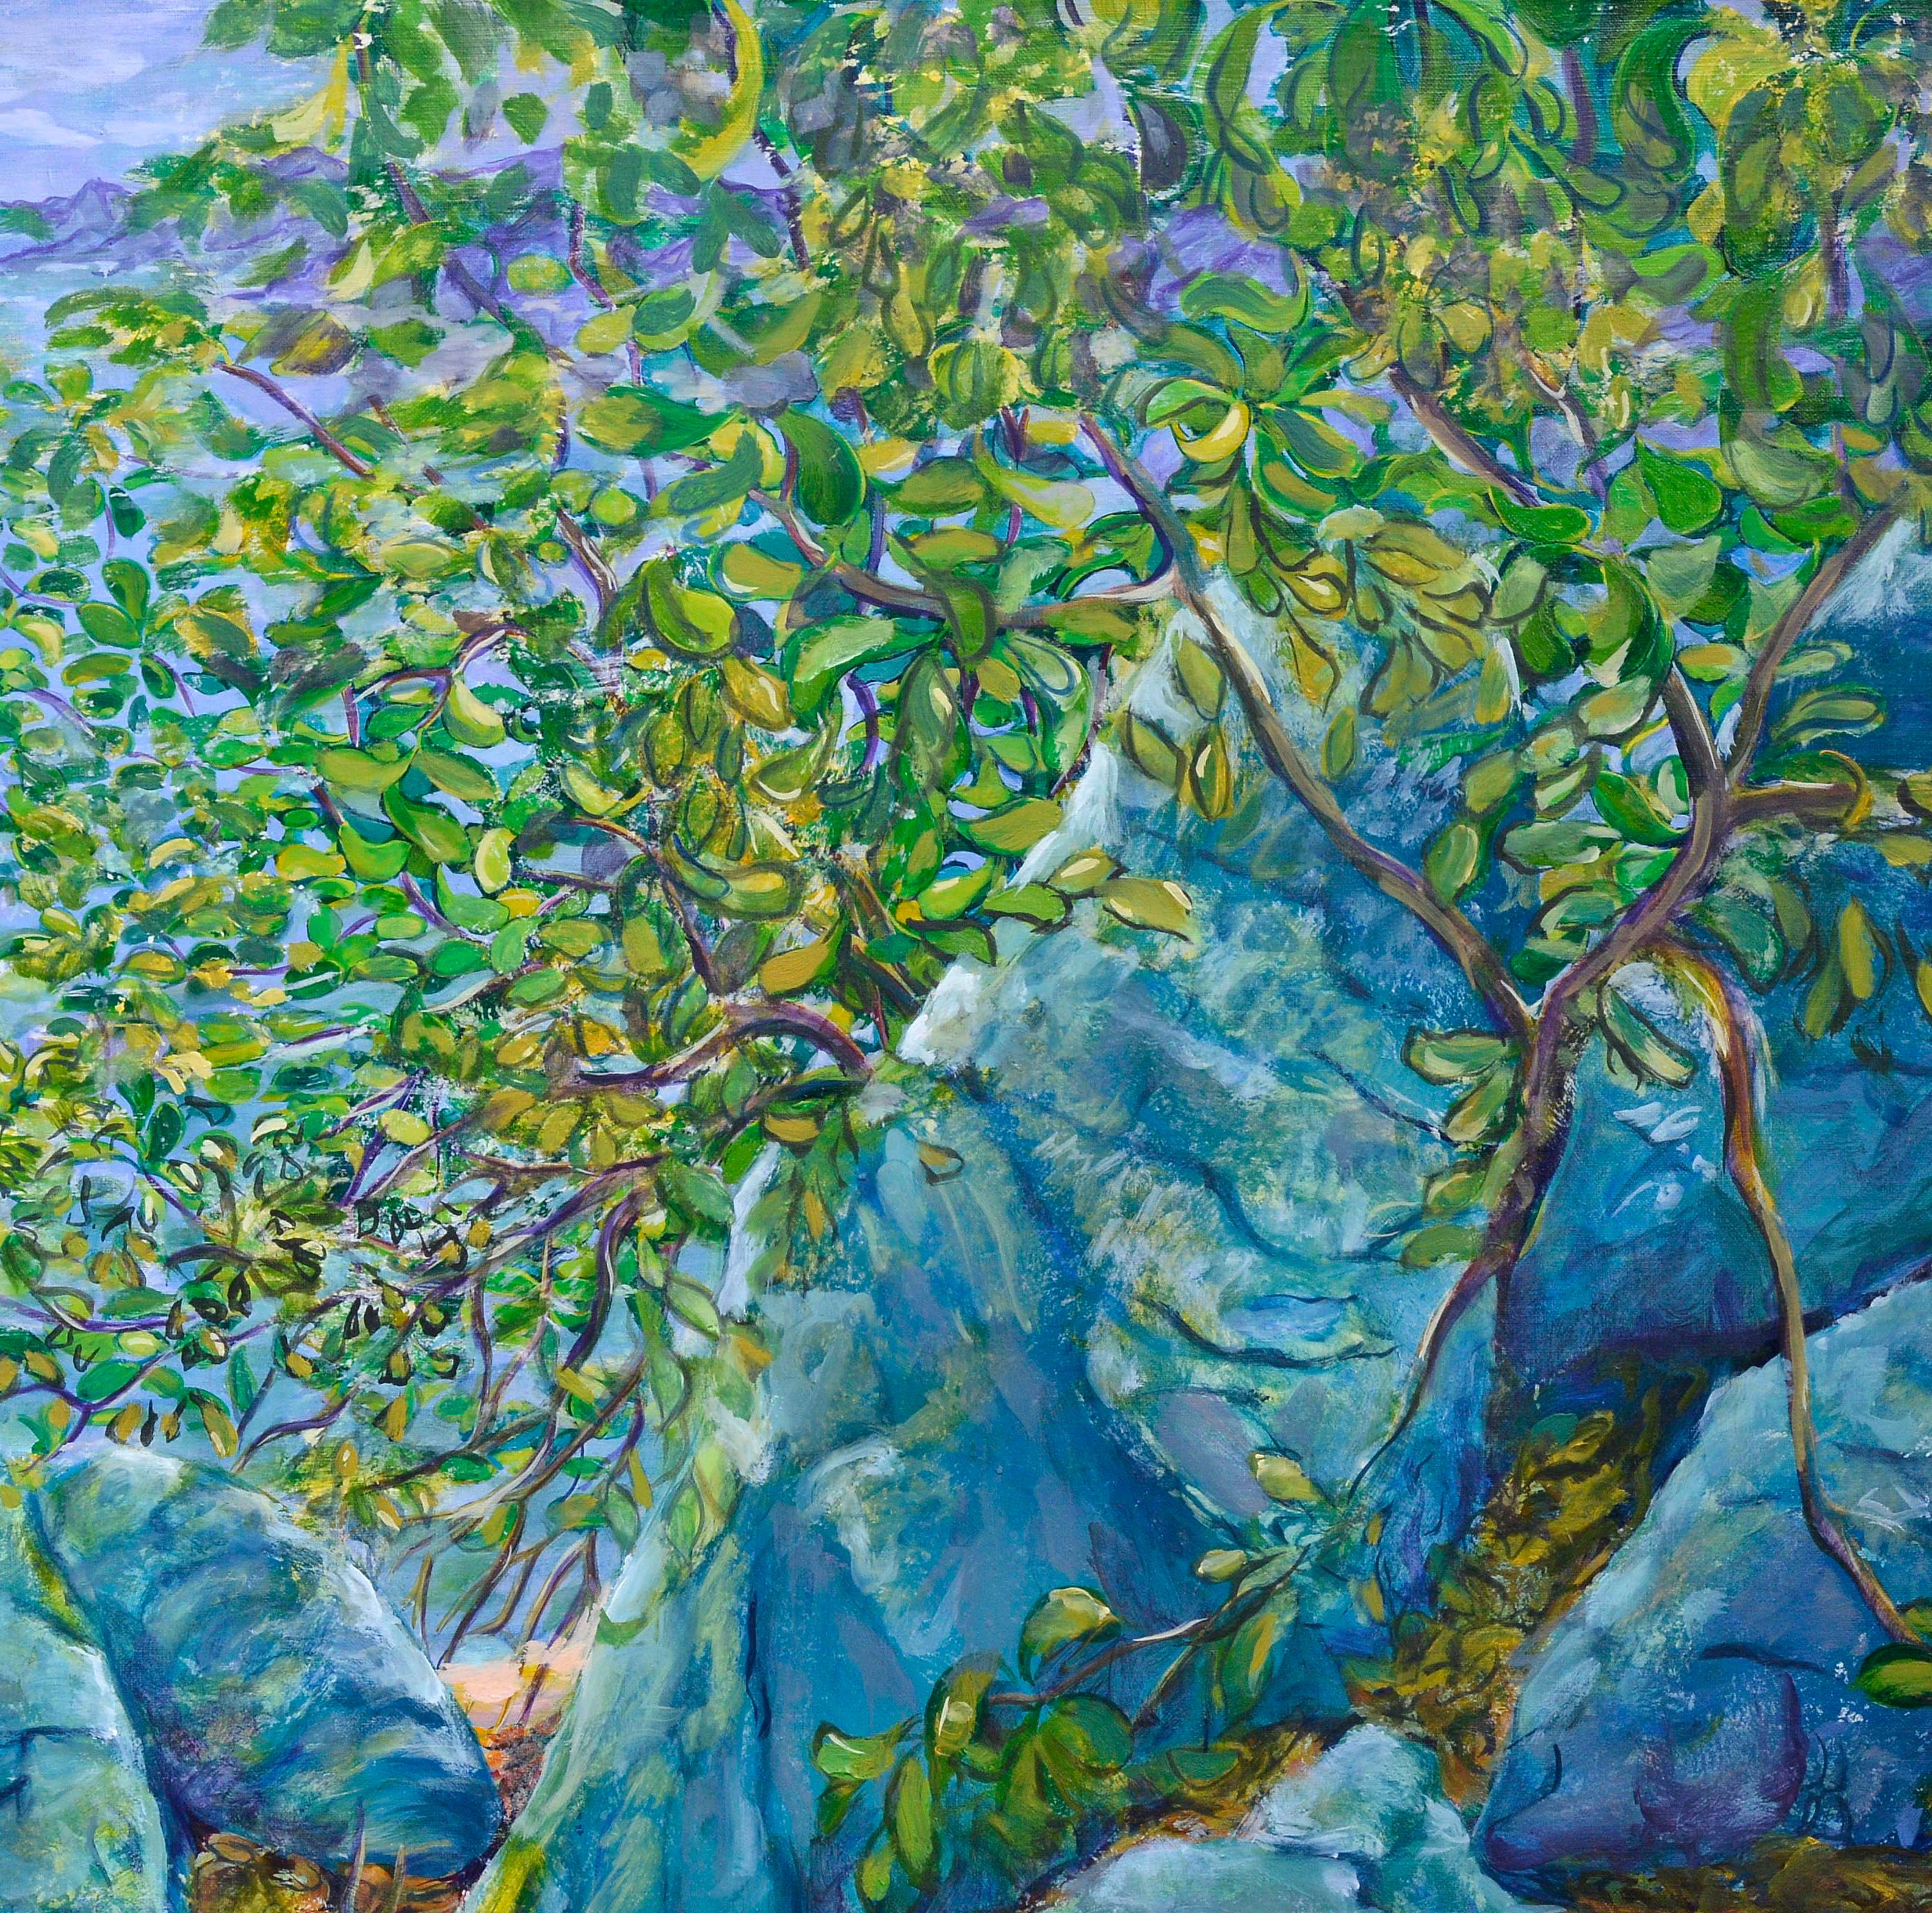 Ballestra bringt in jedem Gemälde eine einzigartige Bewegung zum Ausdruck, mit einer sehr subtilen Sinnlichkeit und einer Gegenüberstellung von Farben, die Licht und Schatten offenbaren und eine Synergie zwischen dem Werk und dem Betrachter